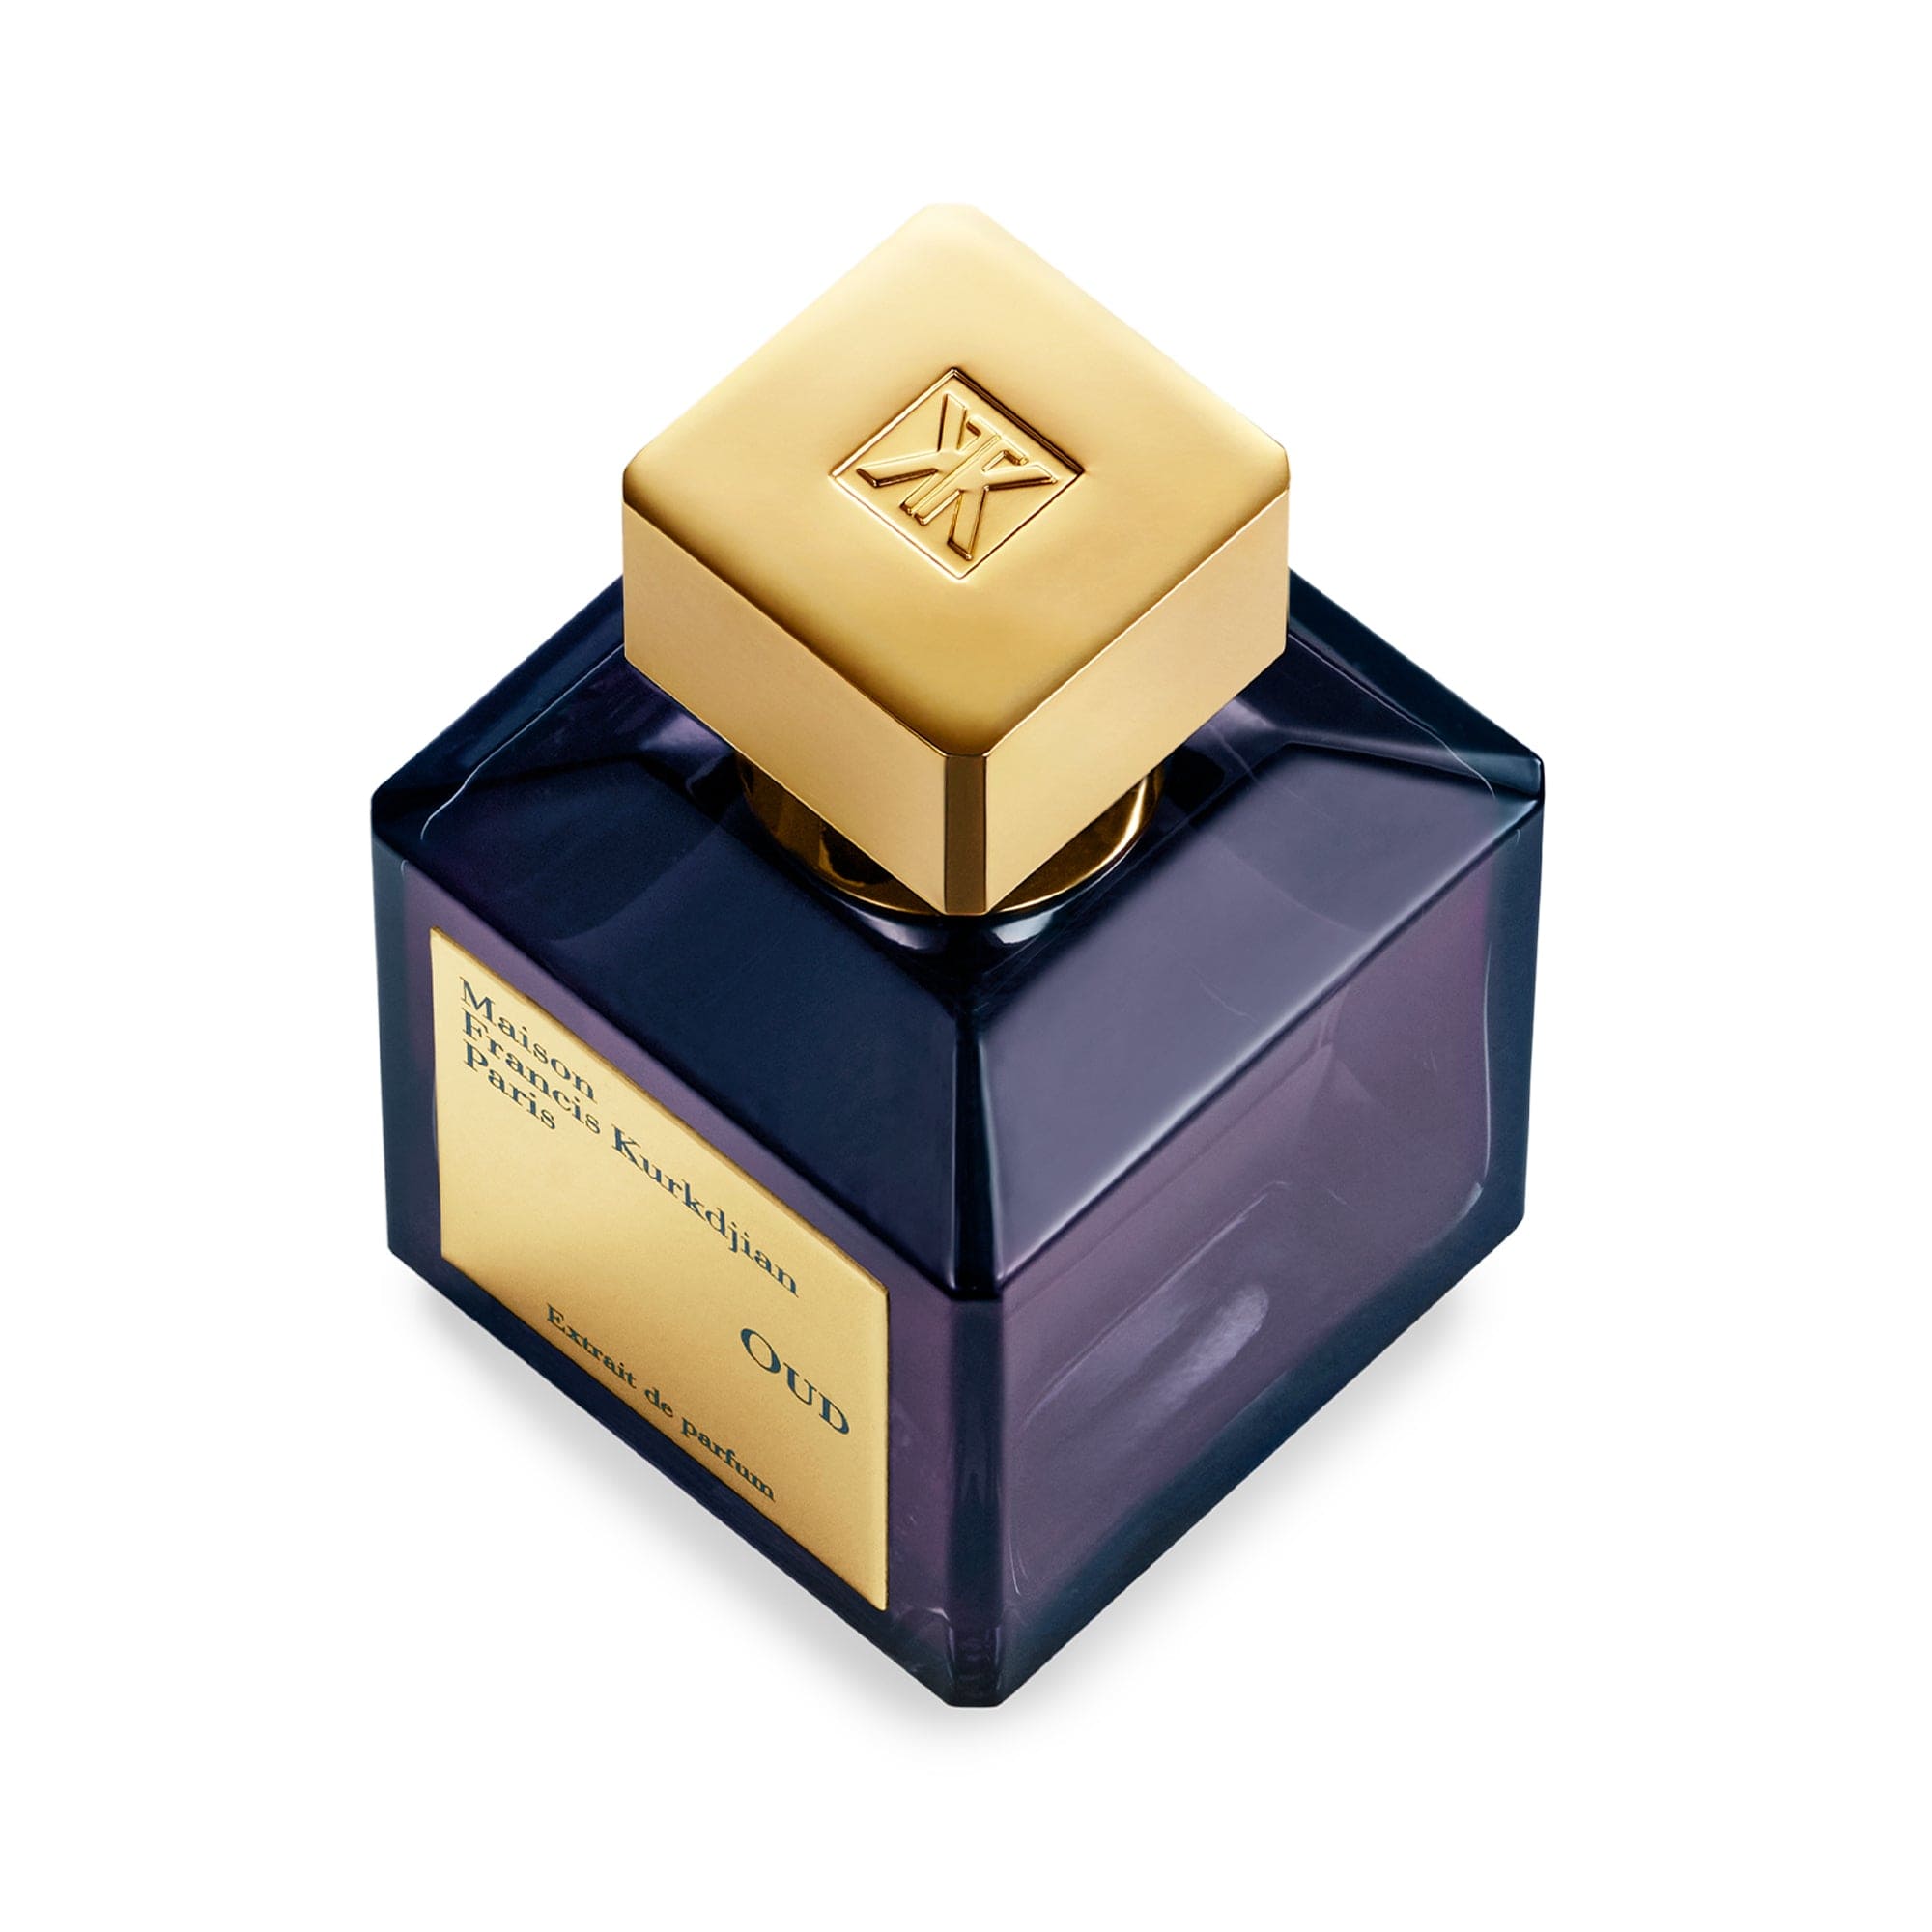 OUD de Maison Francis Kurkdjian Extracto de perfume